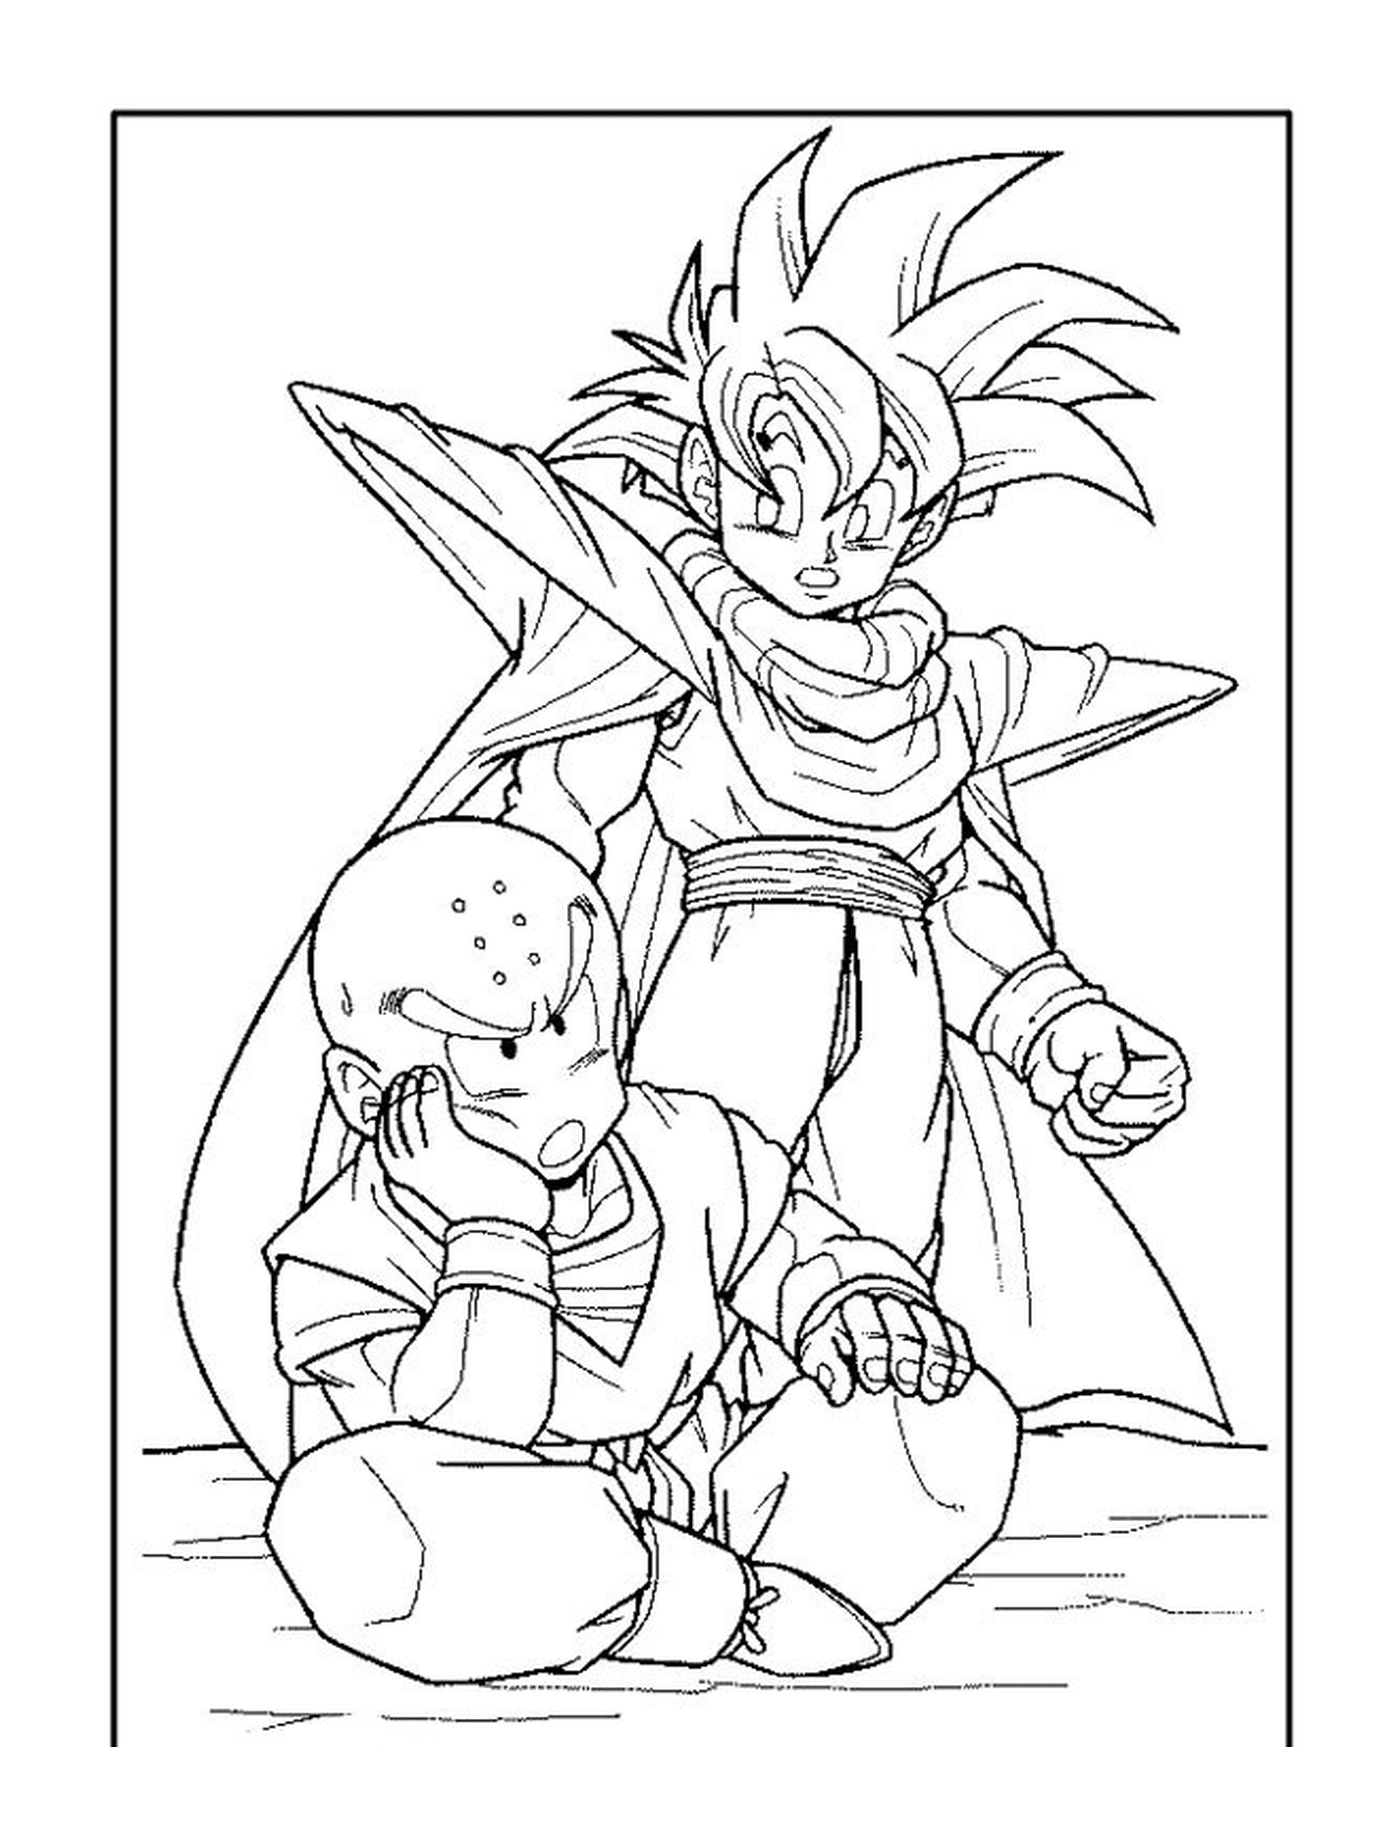  Goku e Krillin, duetto di Dragon Ball Z 